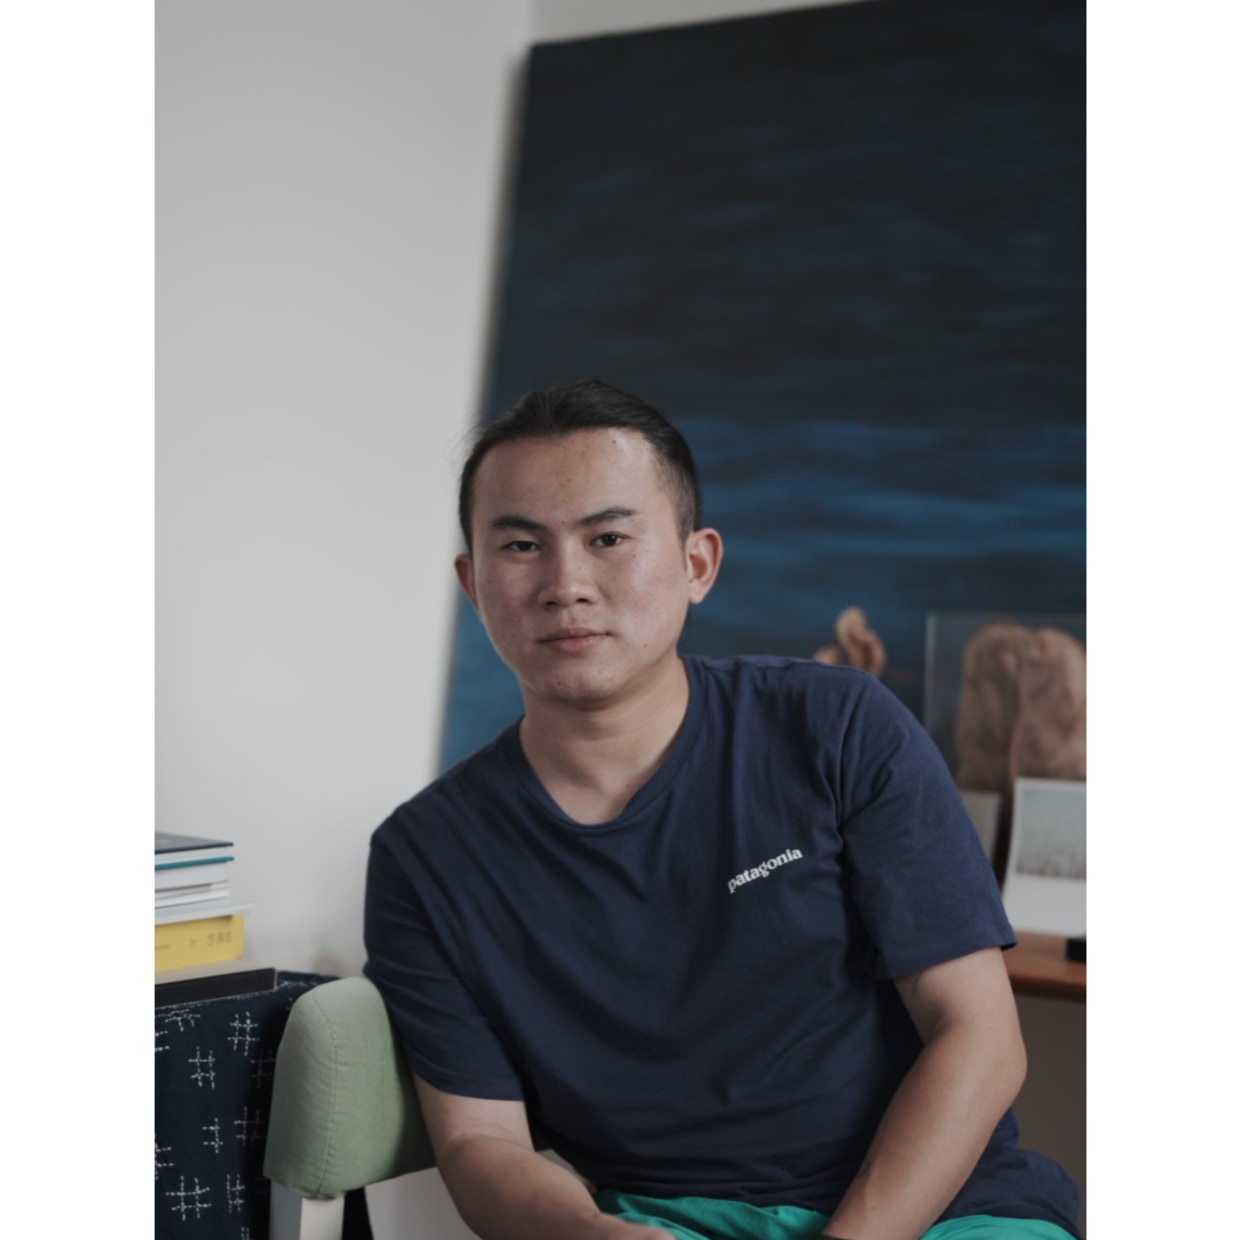 艺术家：乐子毅 乐子毅，1993年出生于福建，目前是一名生活工作于云南的自由摄影师。他从2020年10月开始创作这组LOBA获奖作品，当时他因工作搬到了杭州，但很快就对日复一日的工作感到厌倦。以此为契机，他开始为自己这一代人创作这一系列肖像作品。